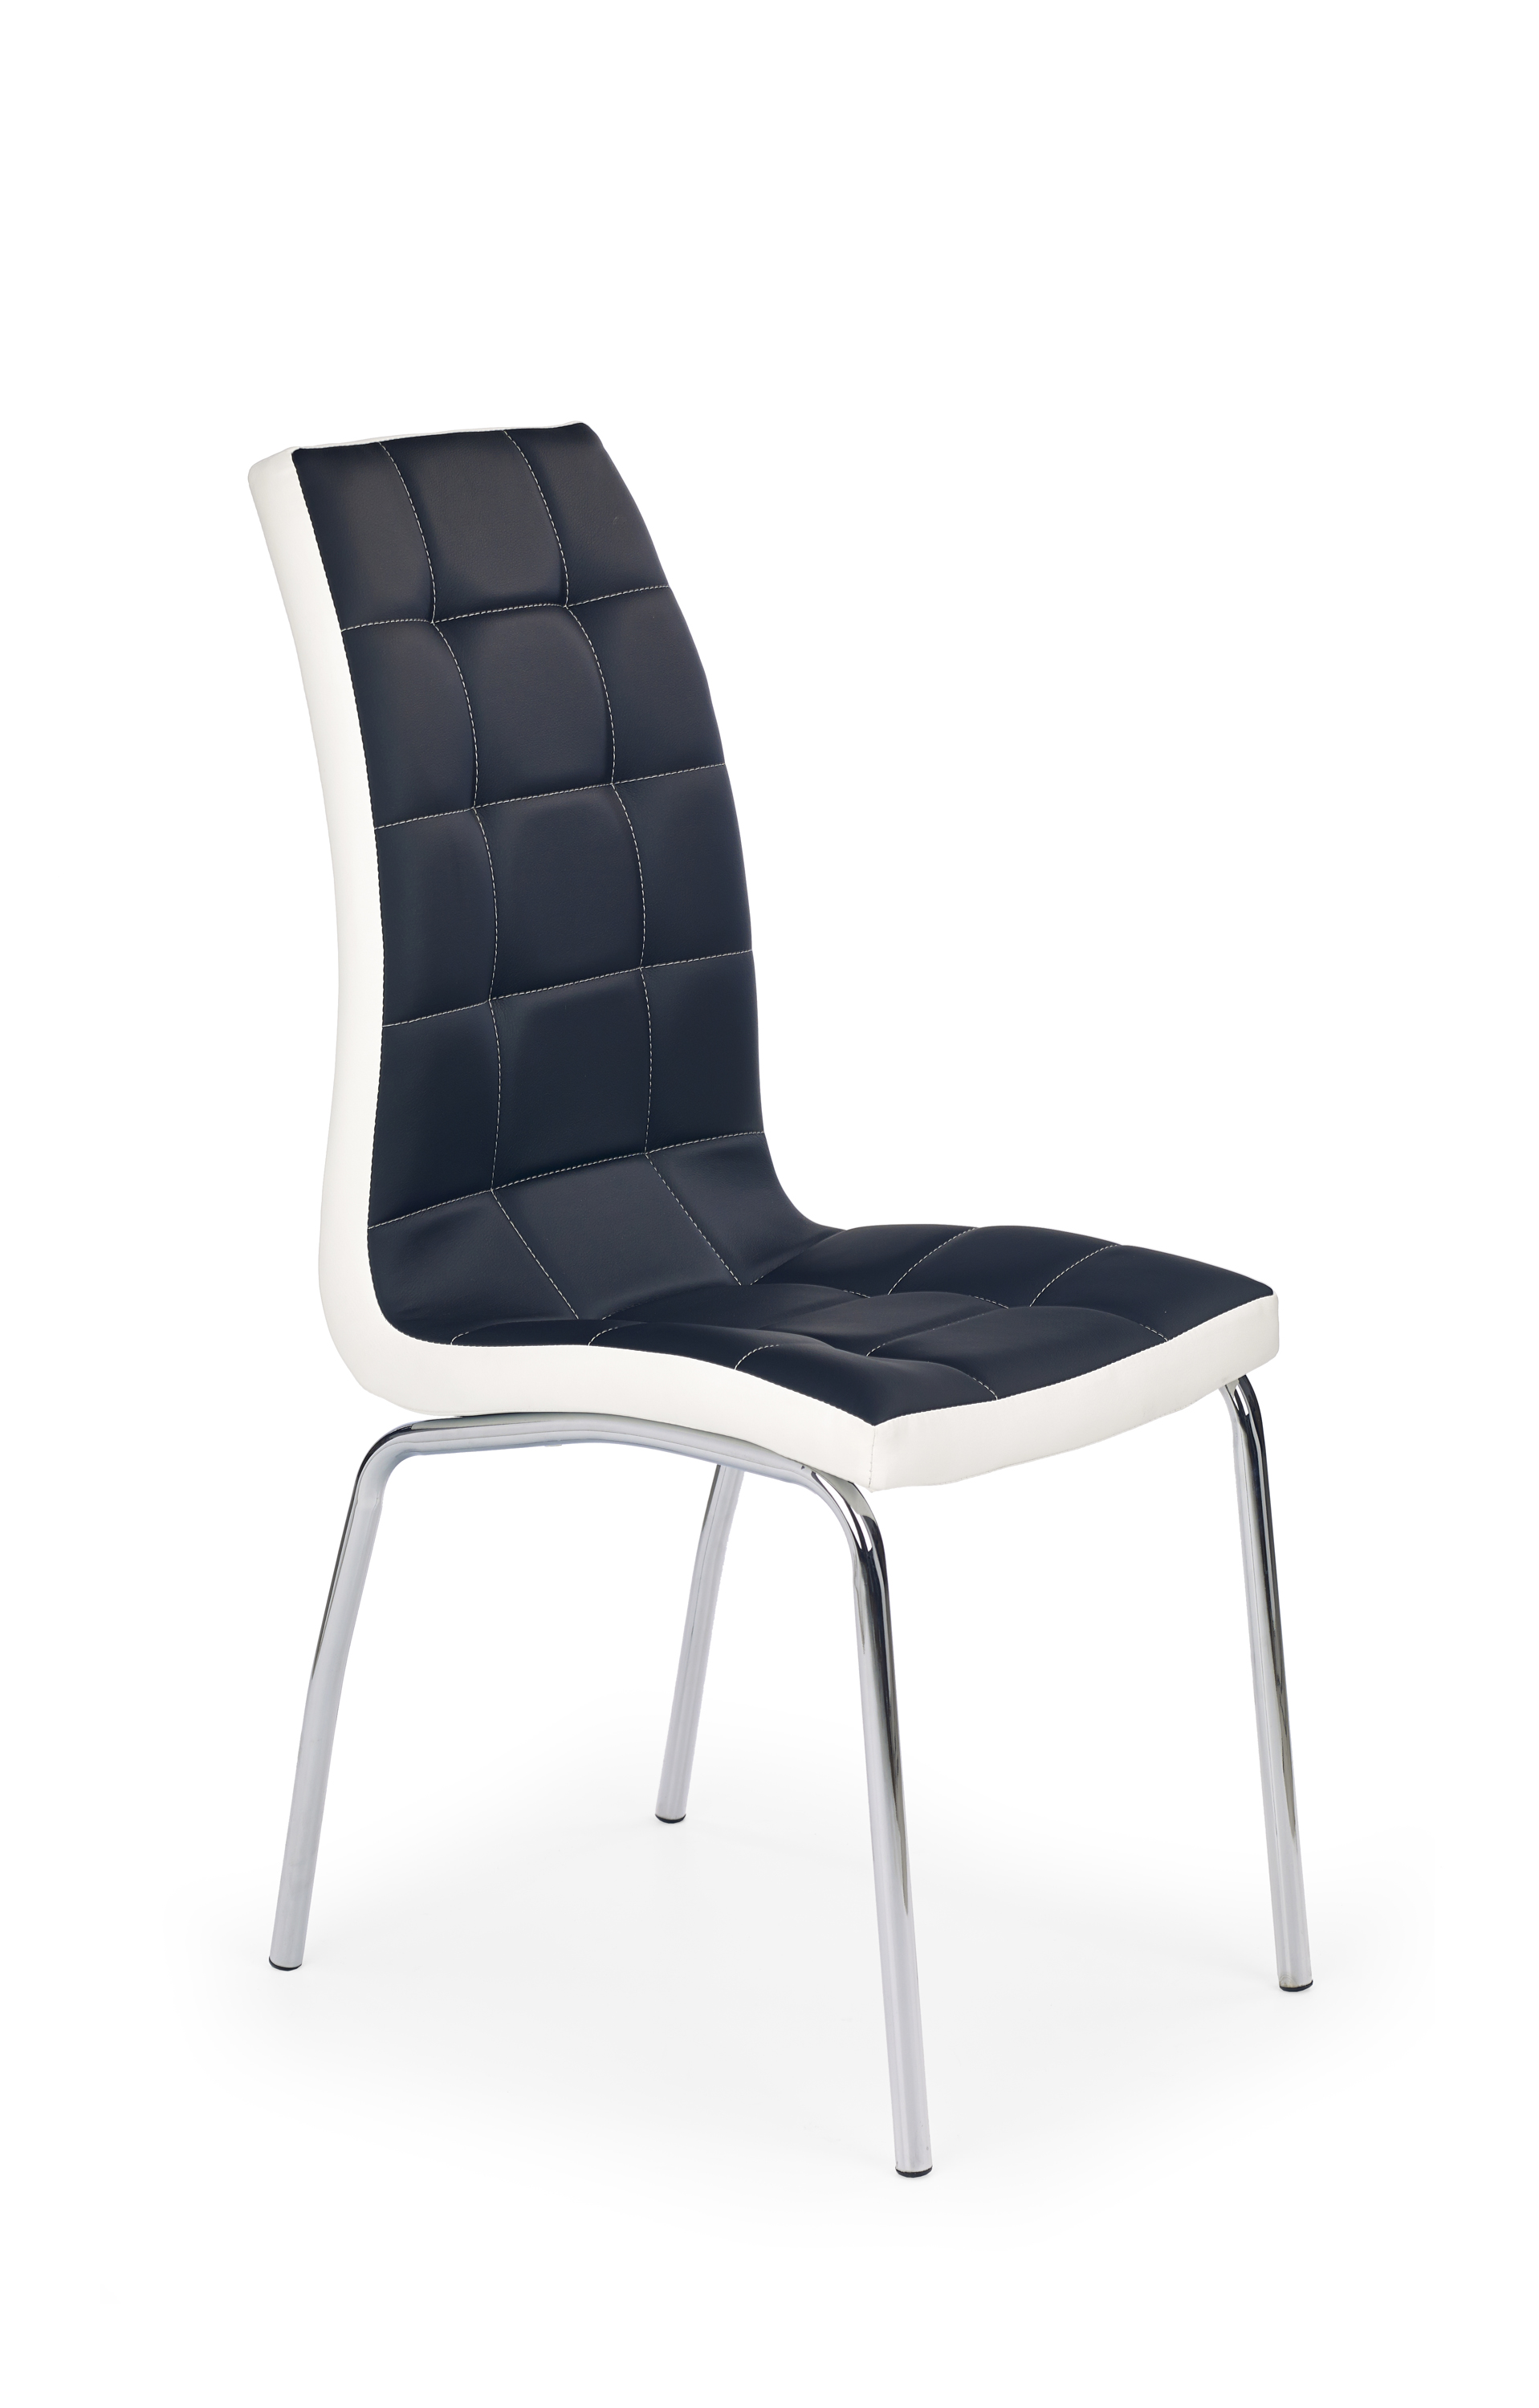 Židle K186 - černý / bílý Židle k186 - černý / bílý